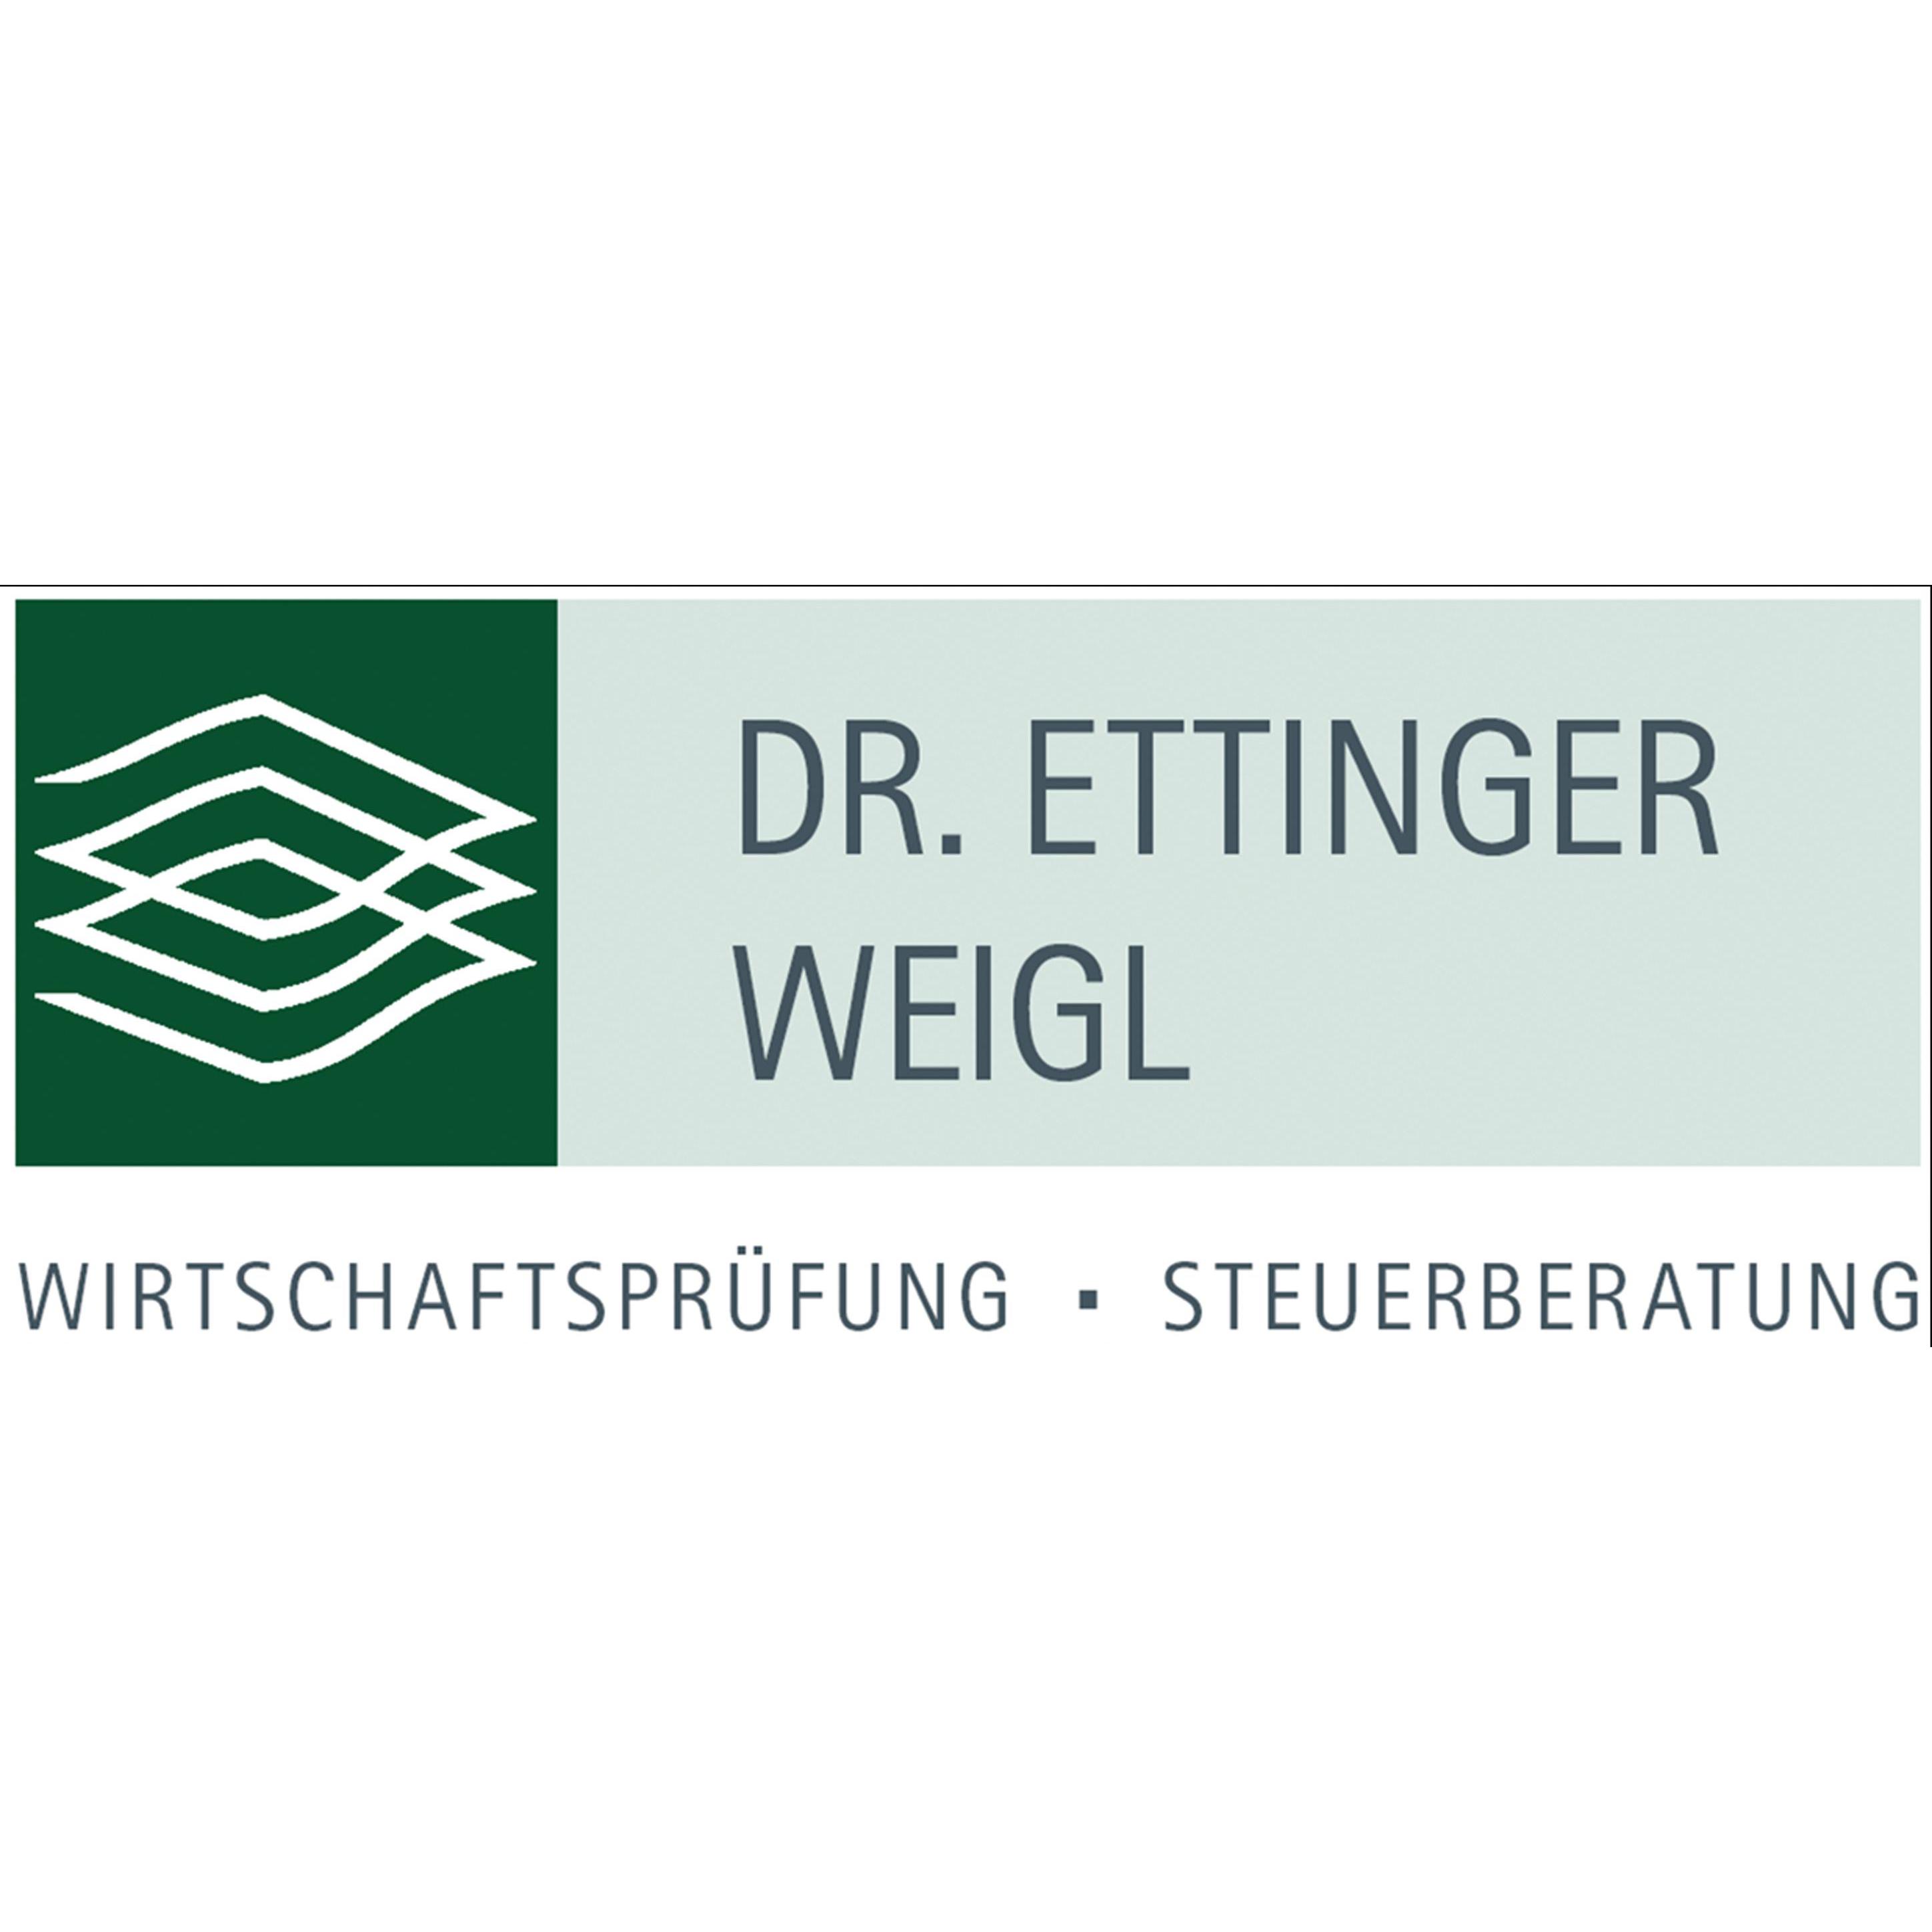 Dr. Ettinger Weigl GmbH&Co.KG Wirtschaftsprüfungsgesellschaft Steuerberatungsgesellschaft in Würzburg - Logo